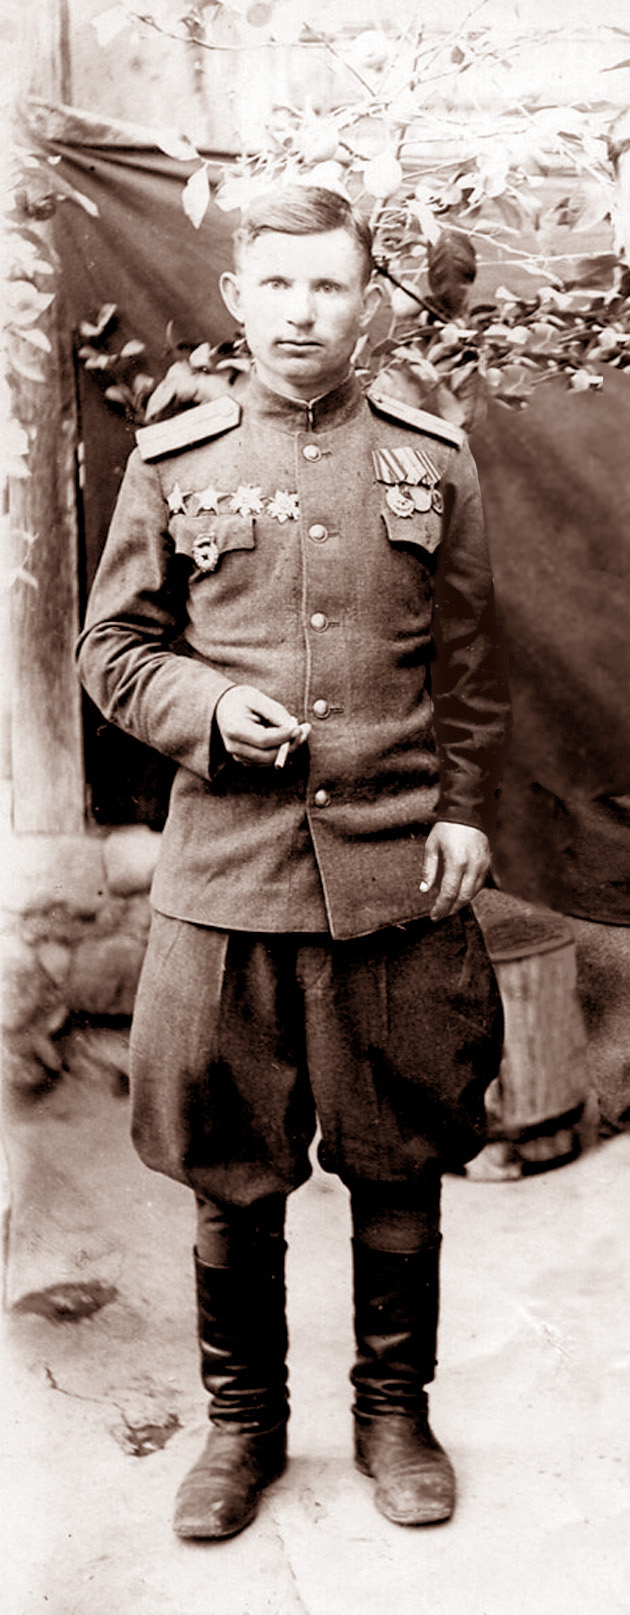 Этот снимок гвардии старшего лейтенанта Симона Карабанова был сделан в 1945 году в немецком городе Ратенов